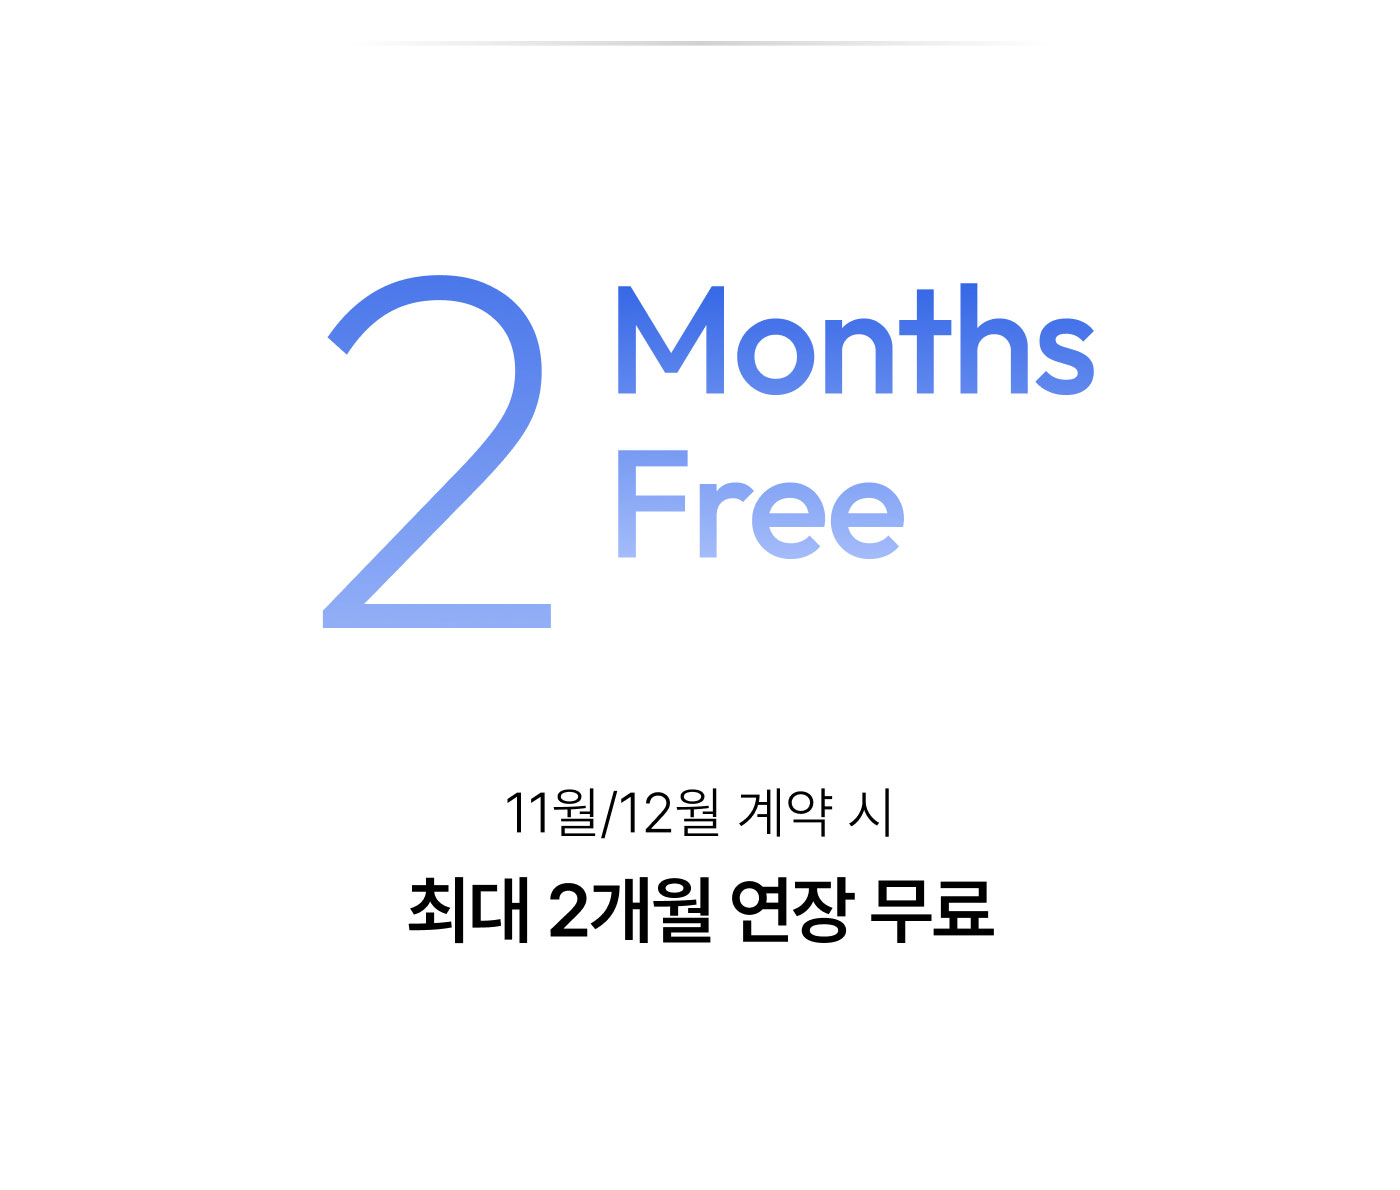 2 Months Free 11월/12월 계약 시 최대 2개월 연장 무료